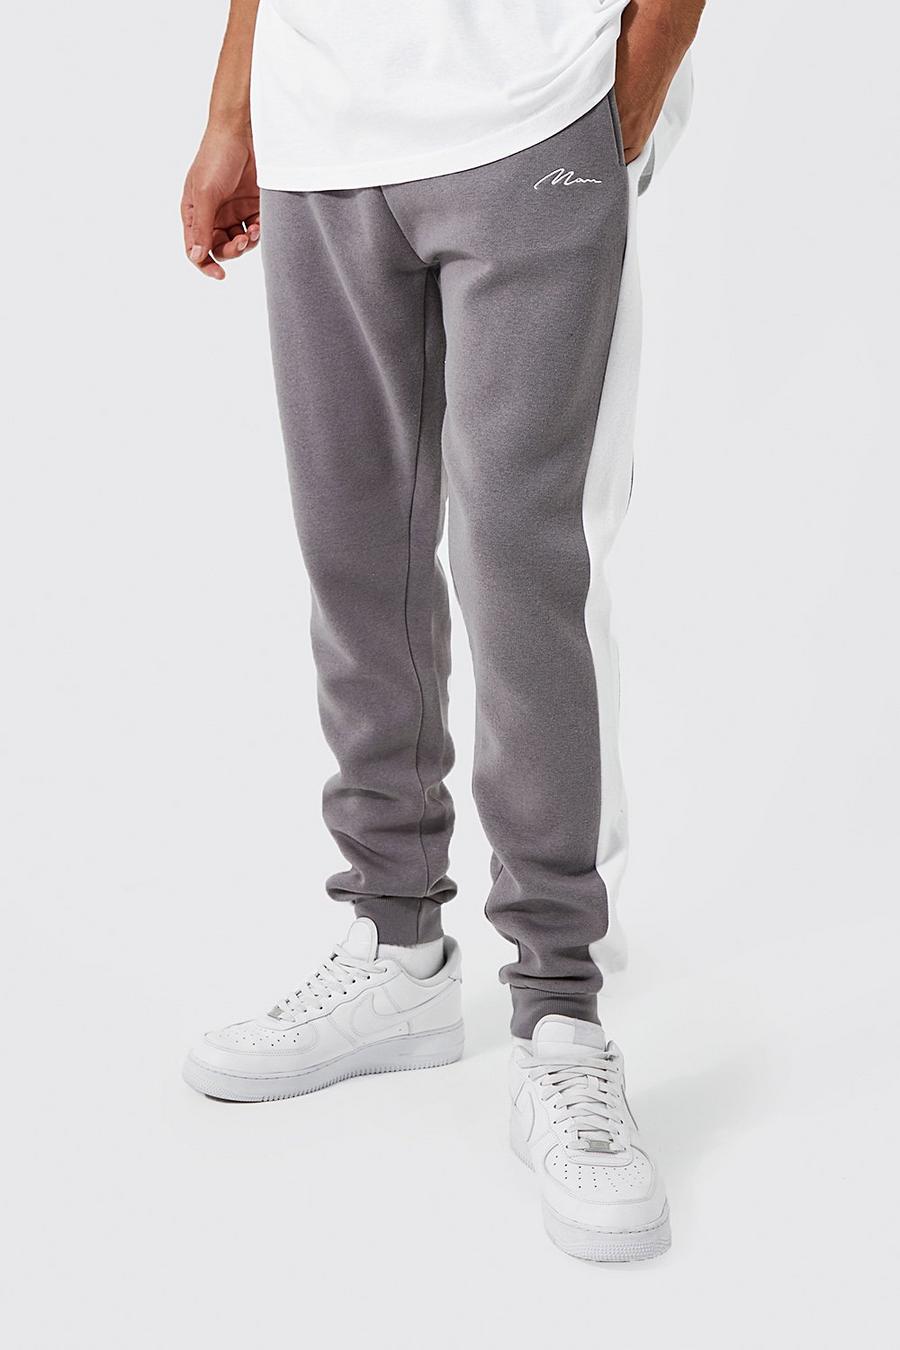 Pantaloni tuta Tall Skinny Fit con pannelli laterali e scritta Man, Slate grigio